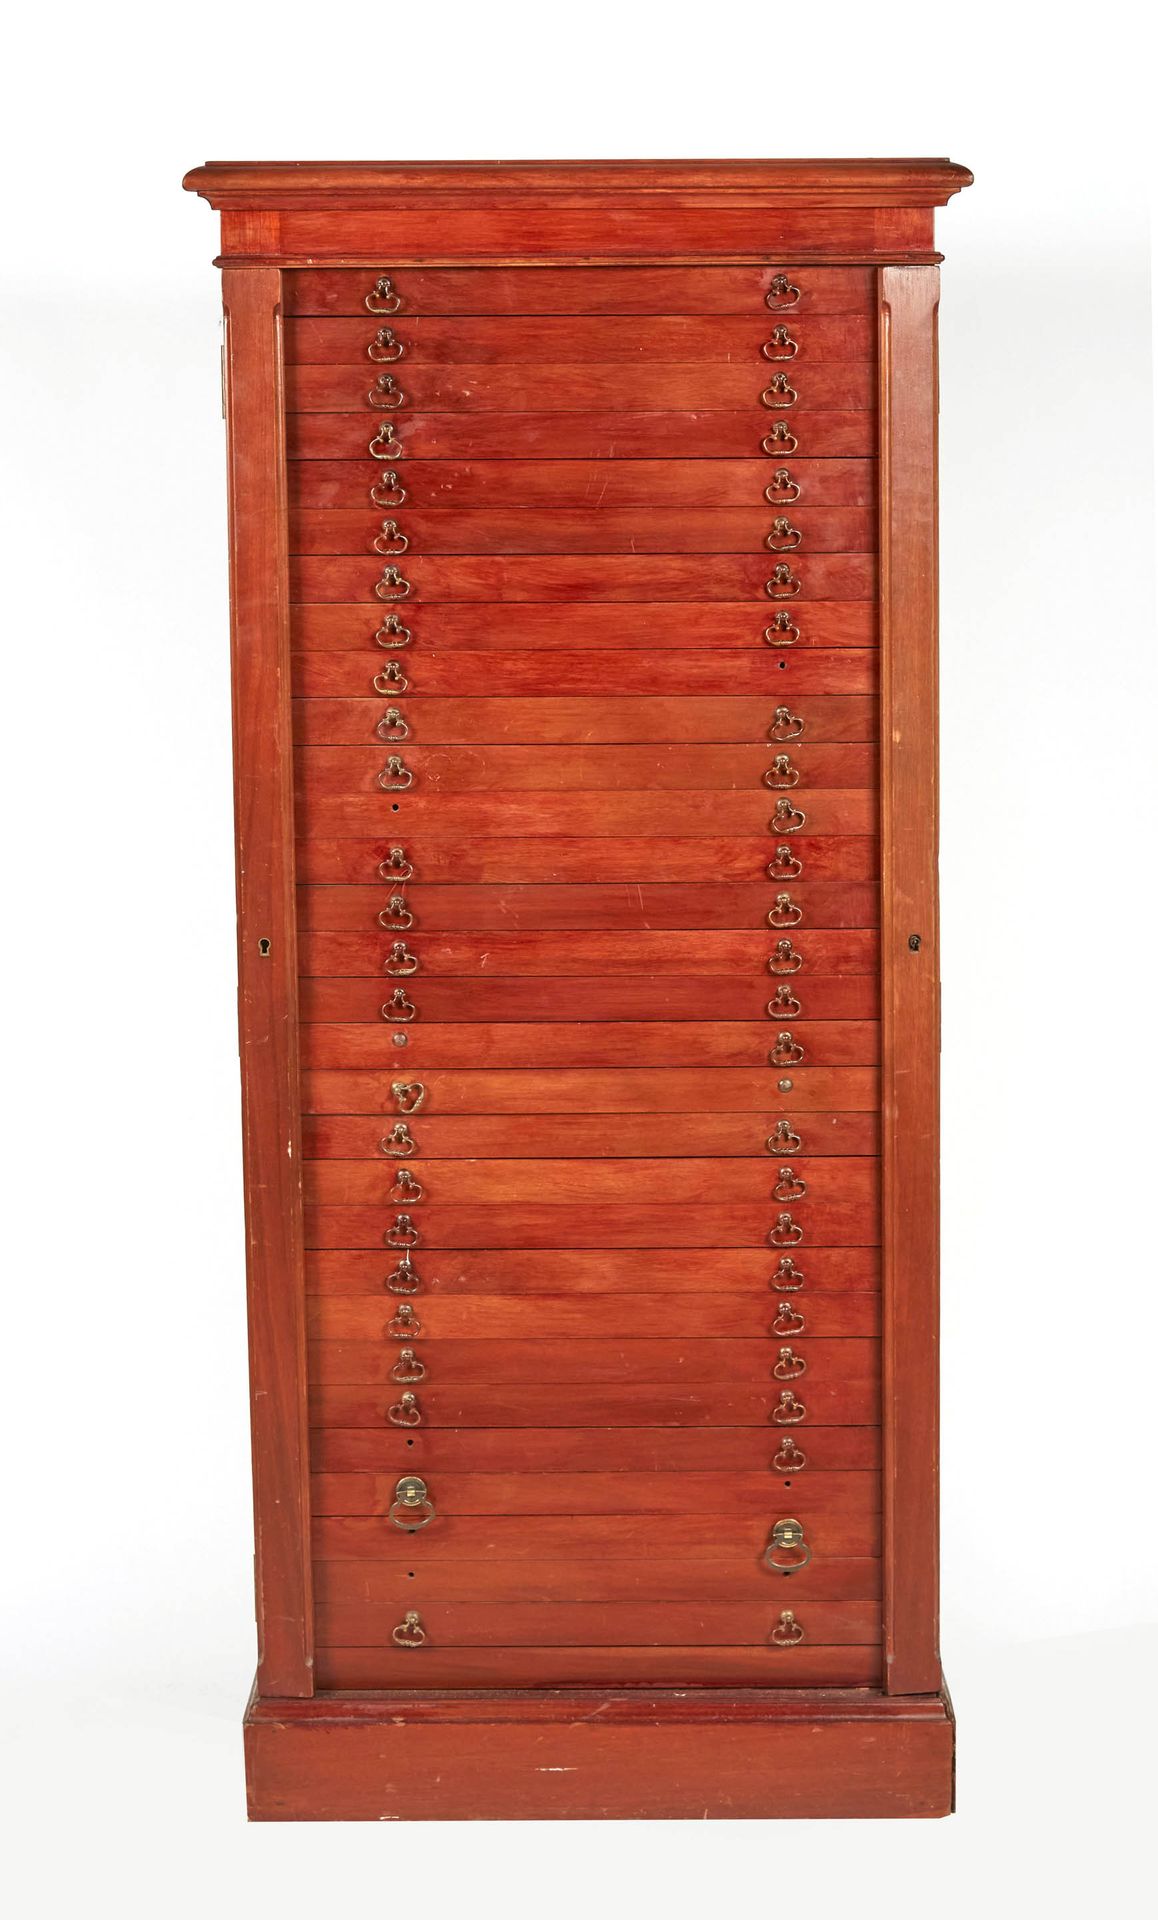 Null 桃花心木贴面奖章柜，有三十个小抽屉（十个抽屉把手丢失）。木质顶部。身高：141厘米。身高：141厘米。长度：63.5厘米。深度：41厘米。